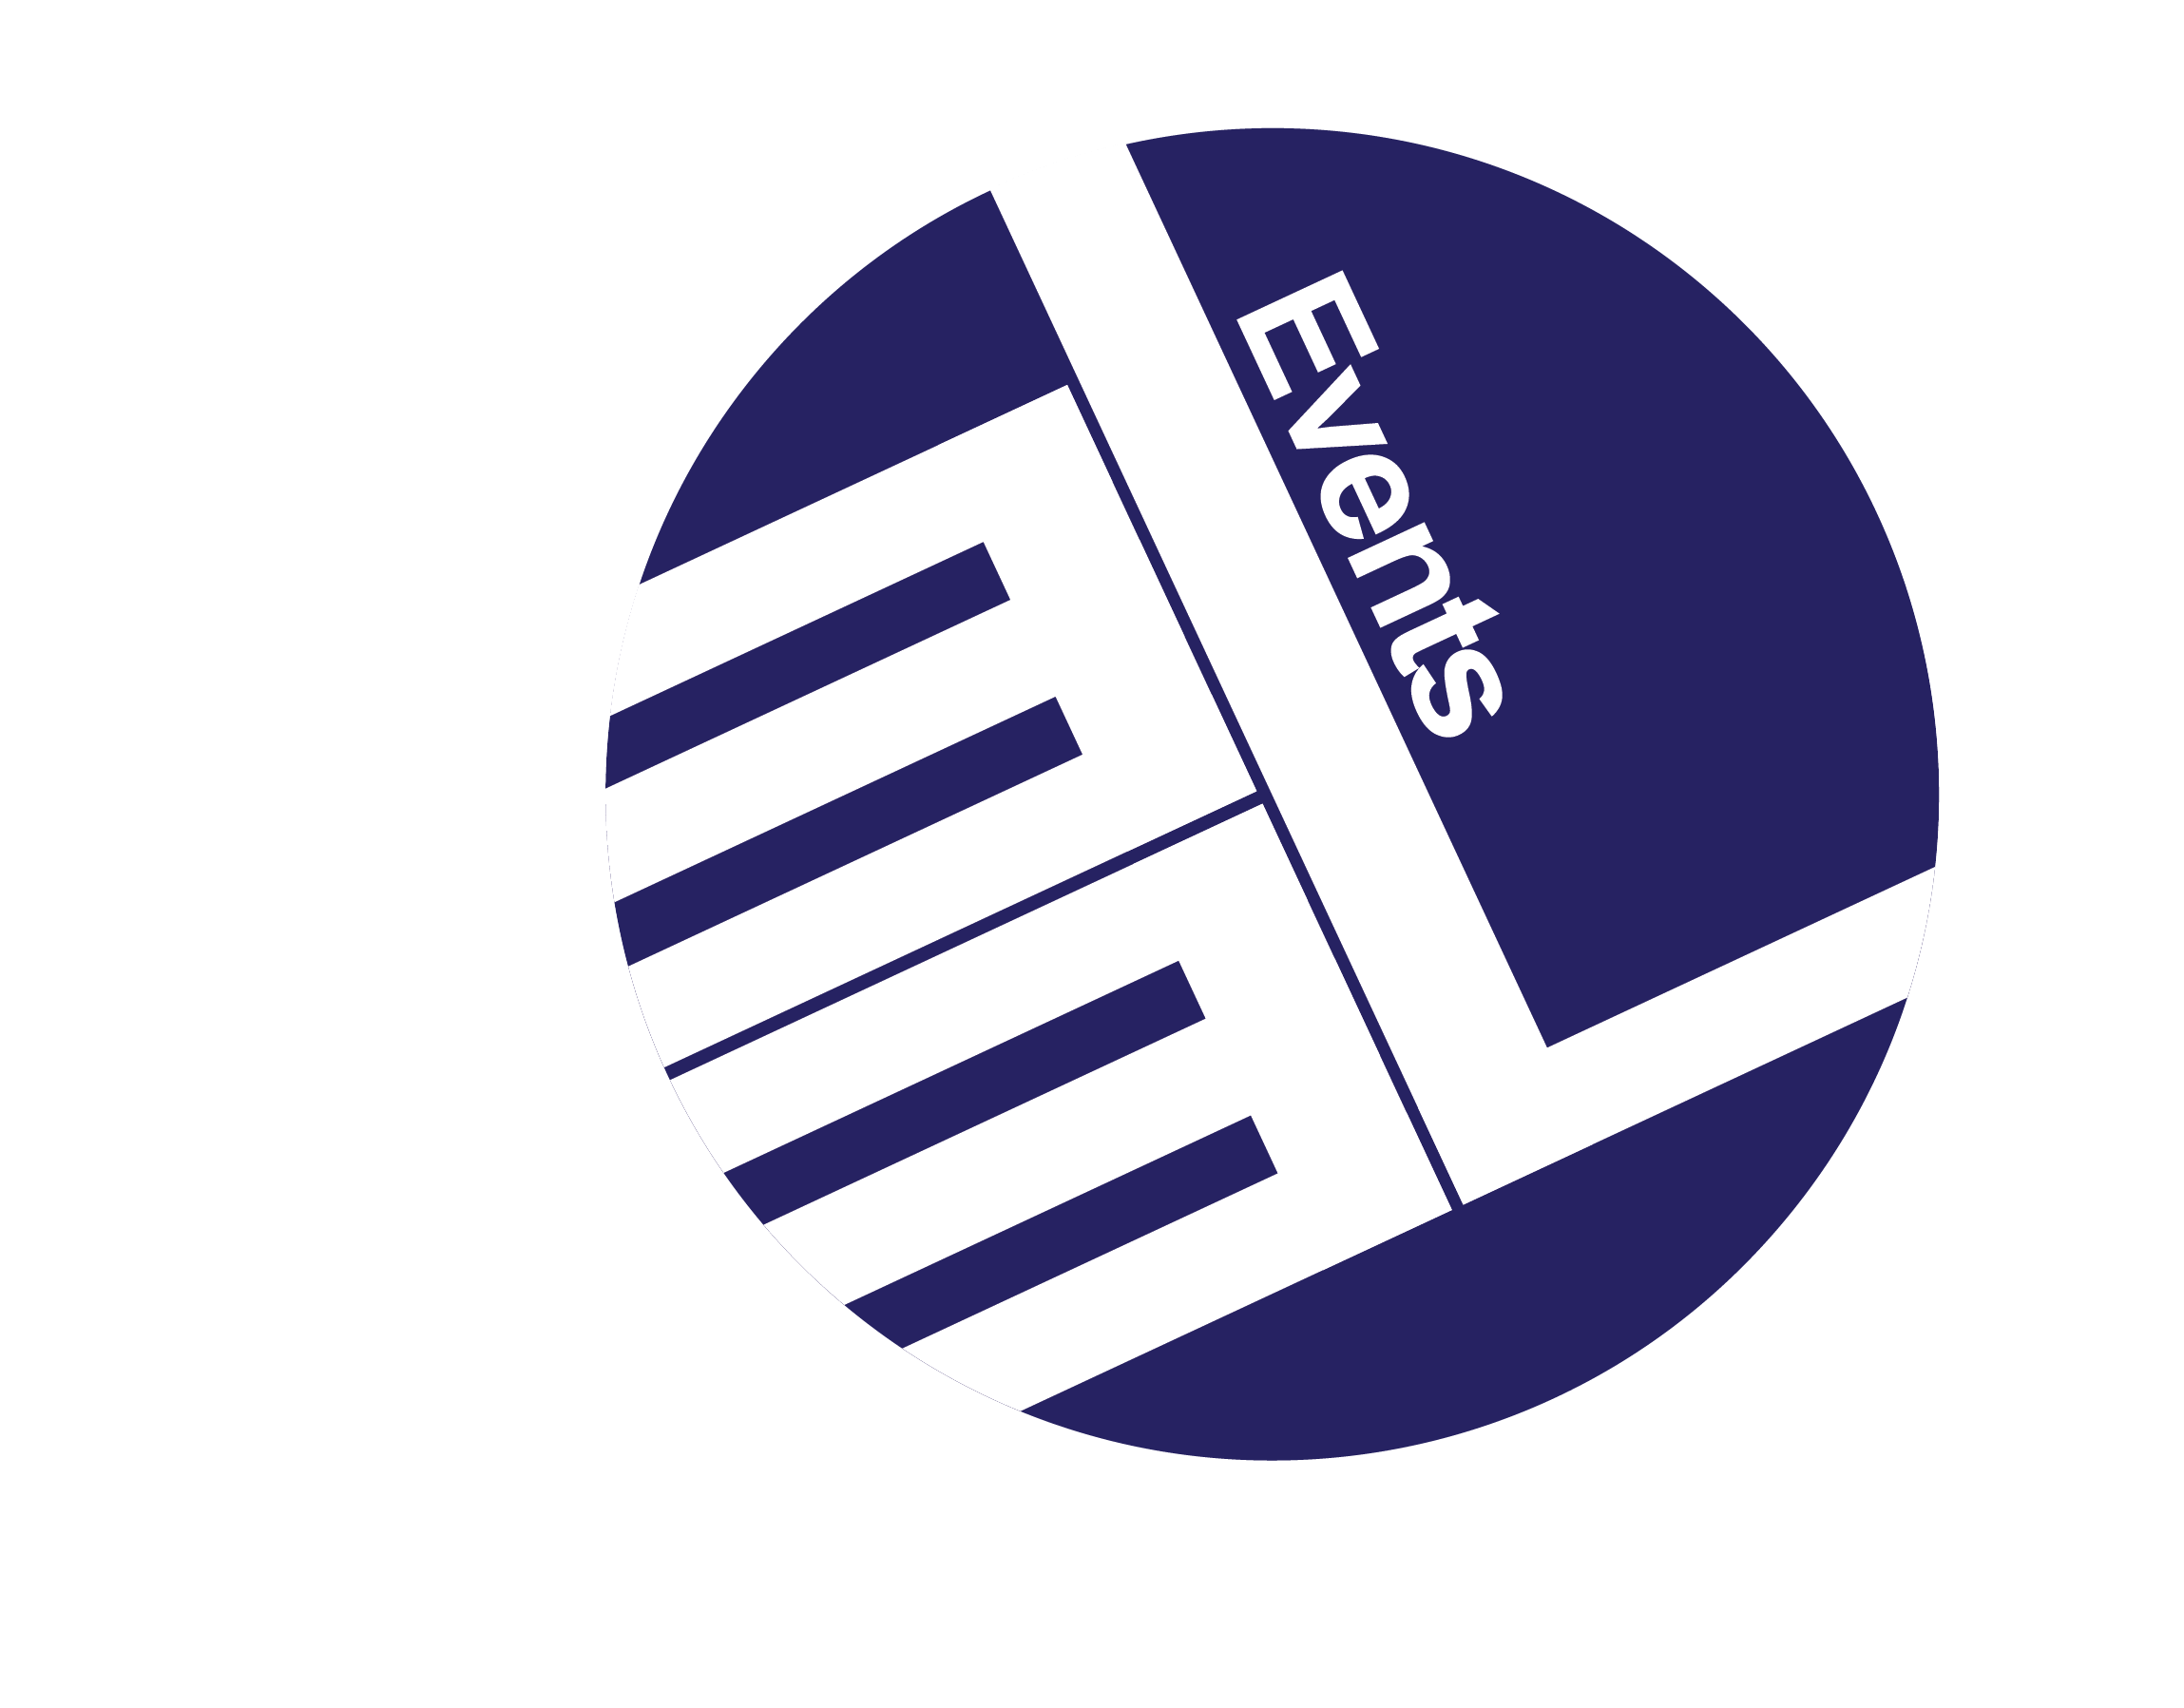 Eel Logo - PPP IN TURKEY FORUM 2018 | EEL Events